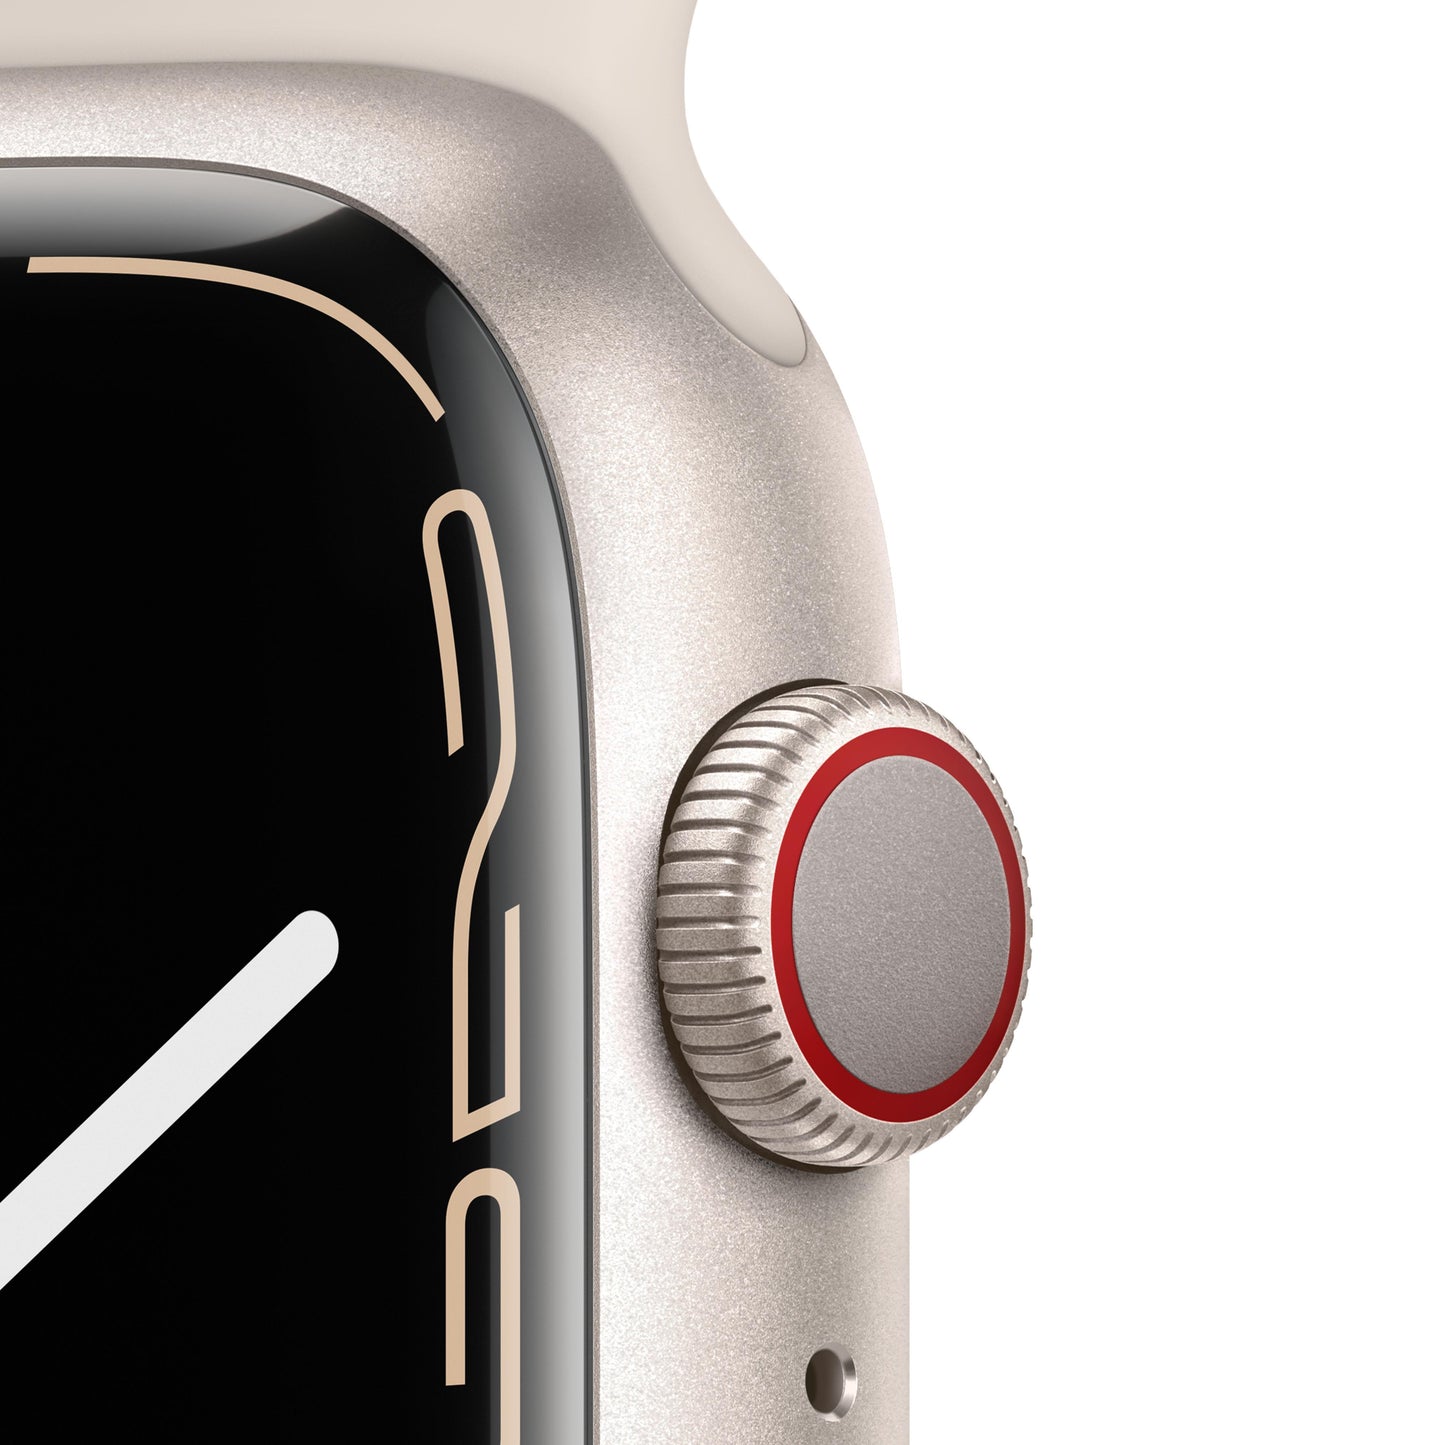 Apple Watch Series 7 (GPS + Cellular) - Caja de aluminio en blanco estrella de 45 mm - Correa deportiva blanco estrella - Talla única